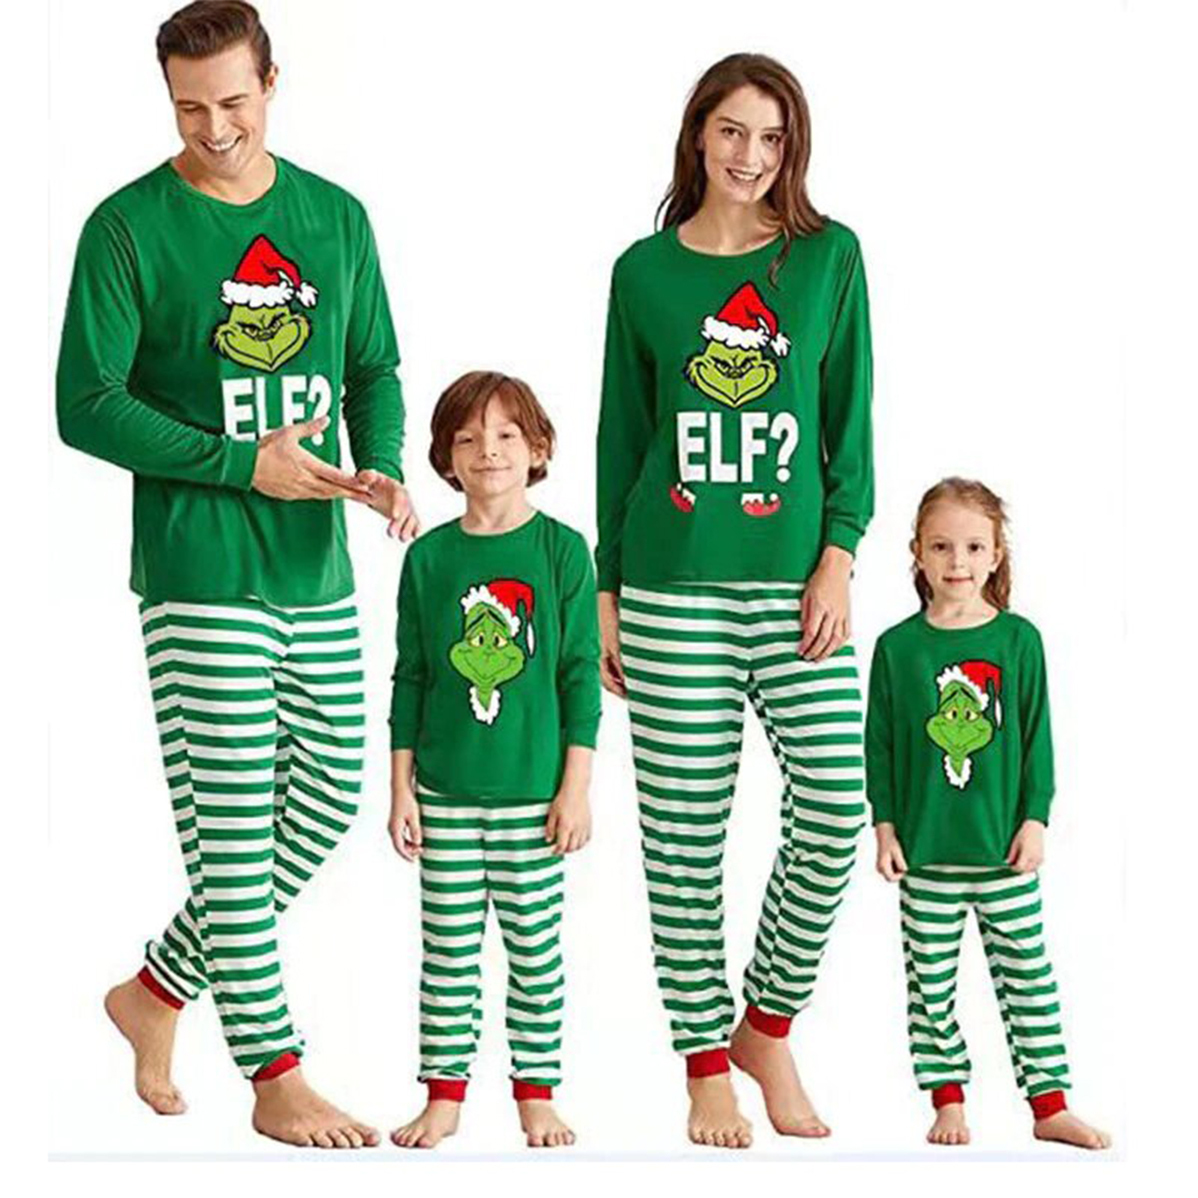 Toddler Carter's 2-Piece Christmas Elf Pajama Set